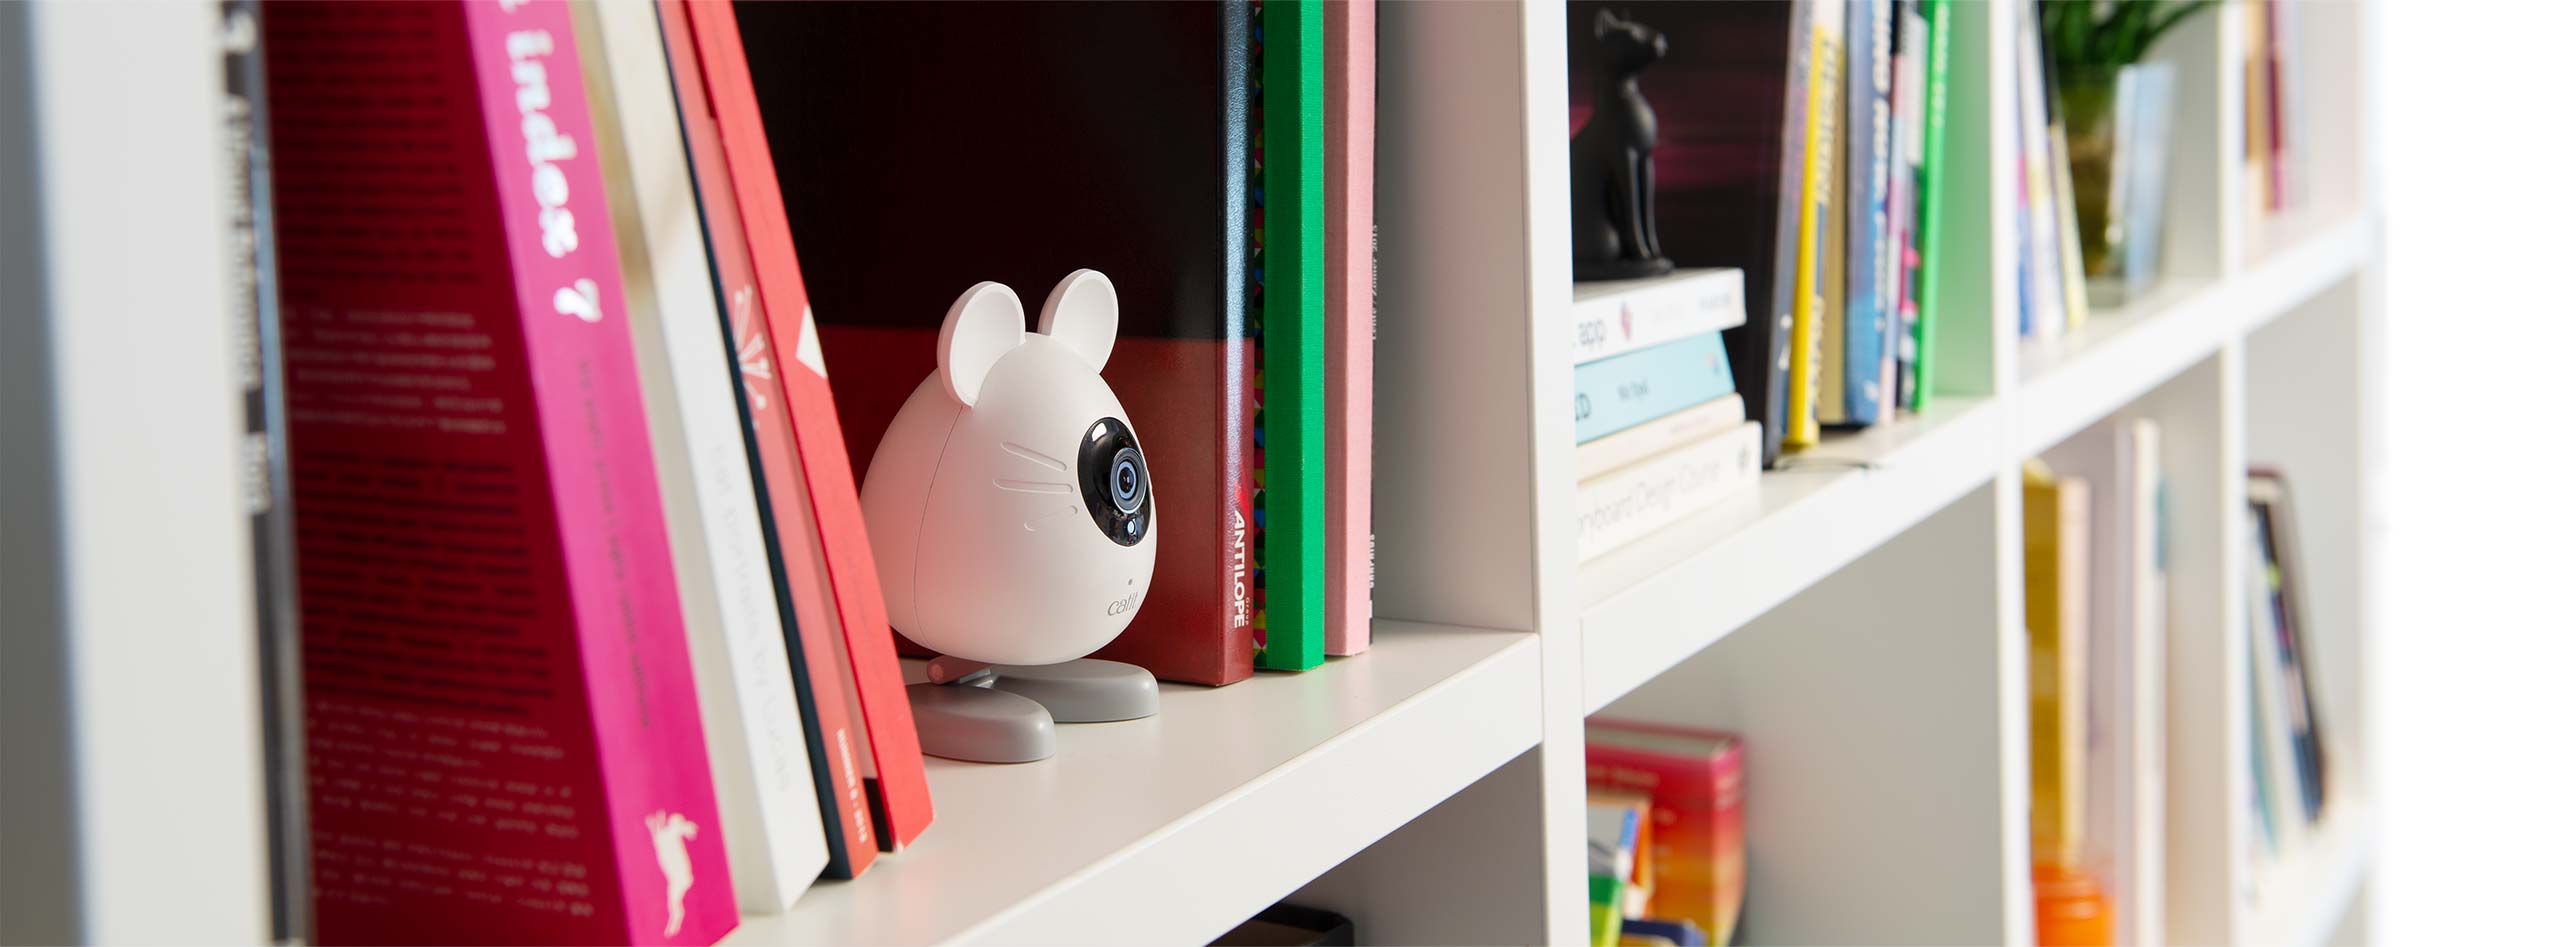 PIXI Smart Mouse Camera uitgestald op een boekenrek.